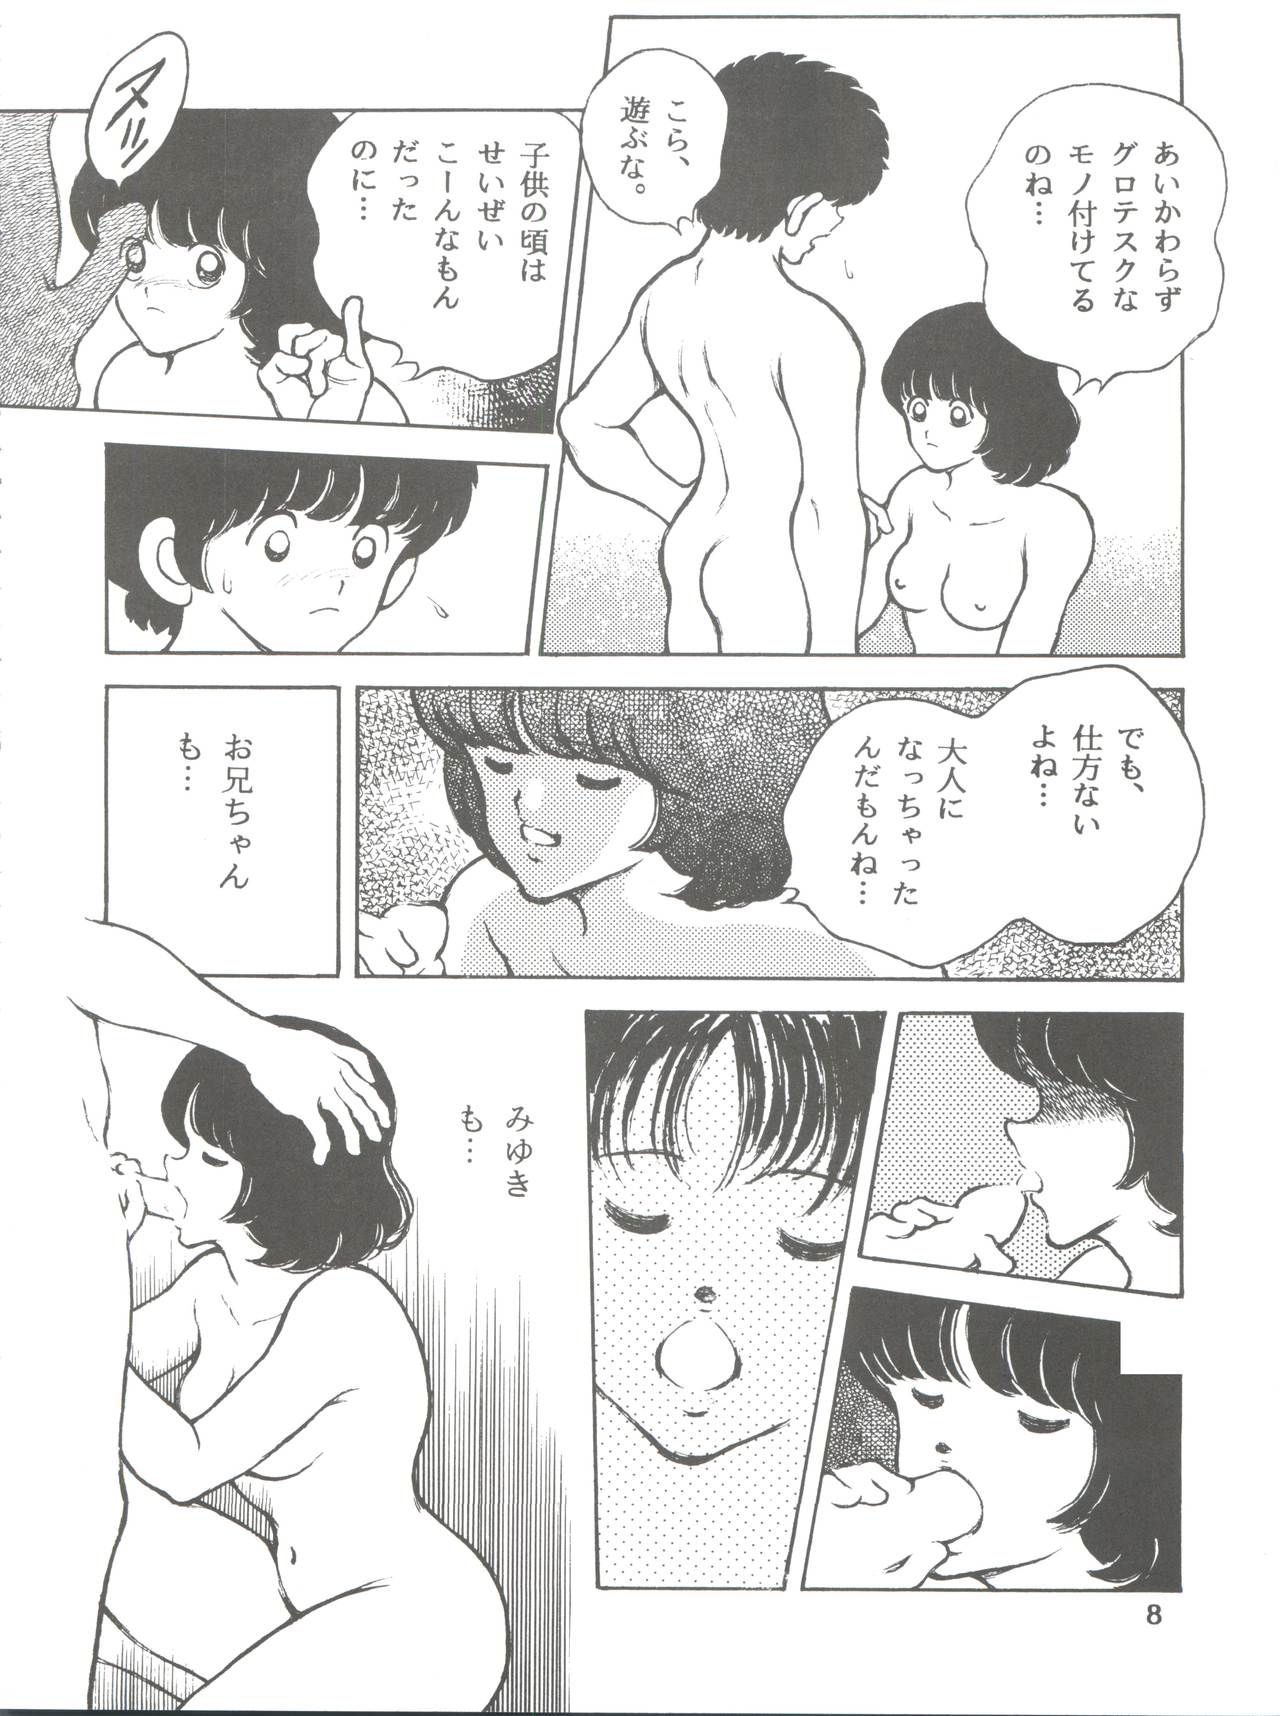 [STUDIO SHARAKU (Sharaku Seiya)] Kanshoku -TOUCH- vol.5 (Miyuki) [2000-08-13] page 8 full